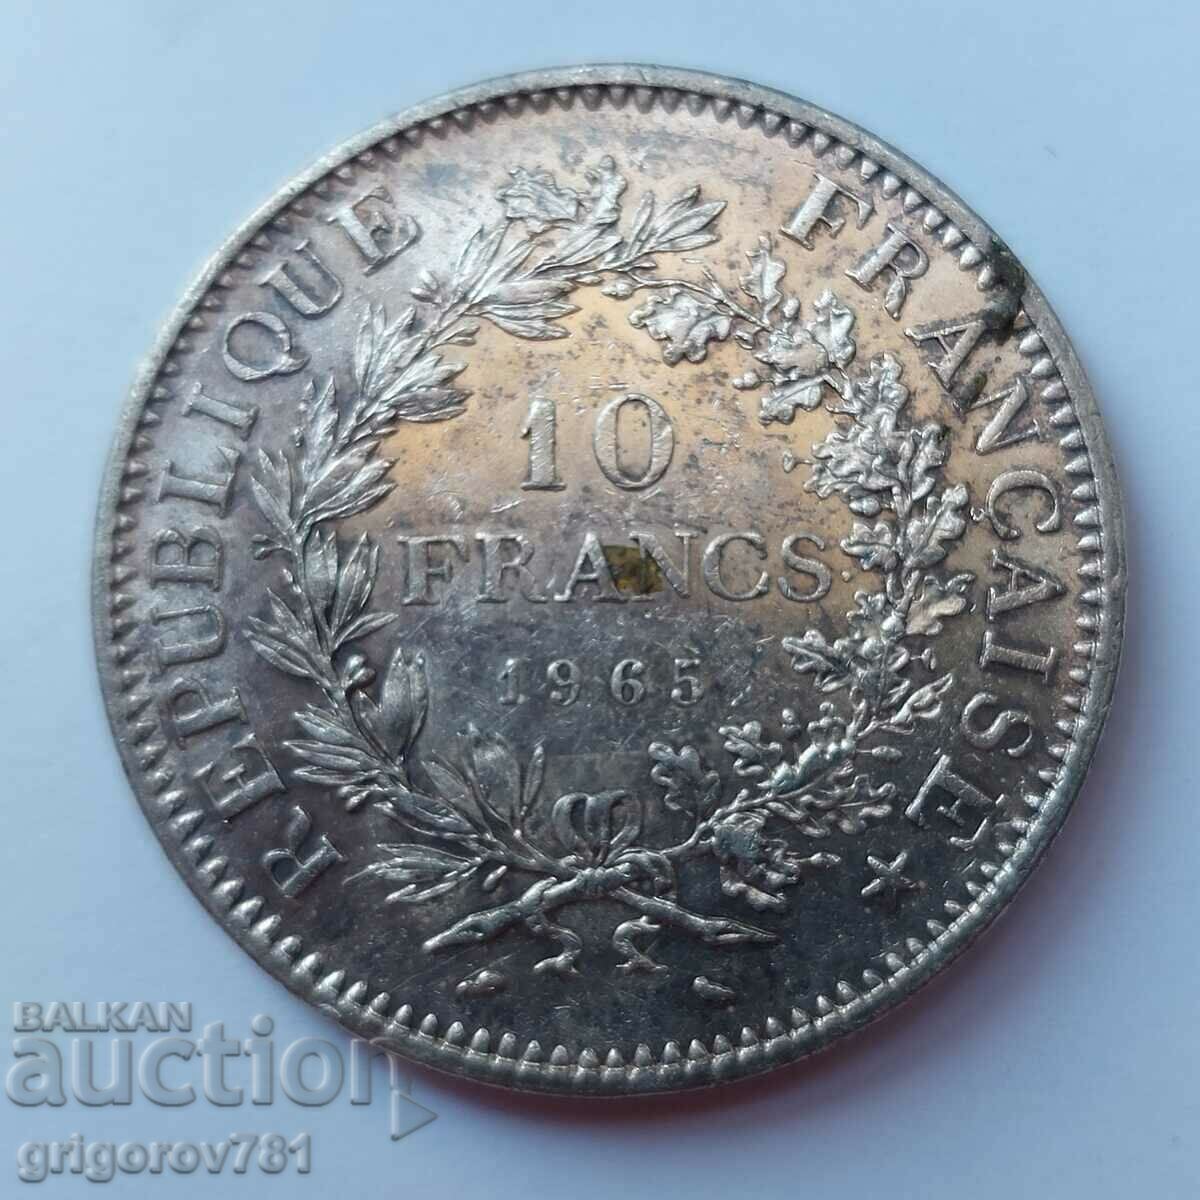 Ασημένιο 10 φράγκα Γαλλία 1965 - ασημένιο νόμισμα # 6